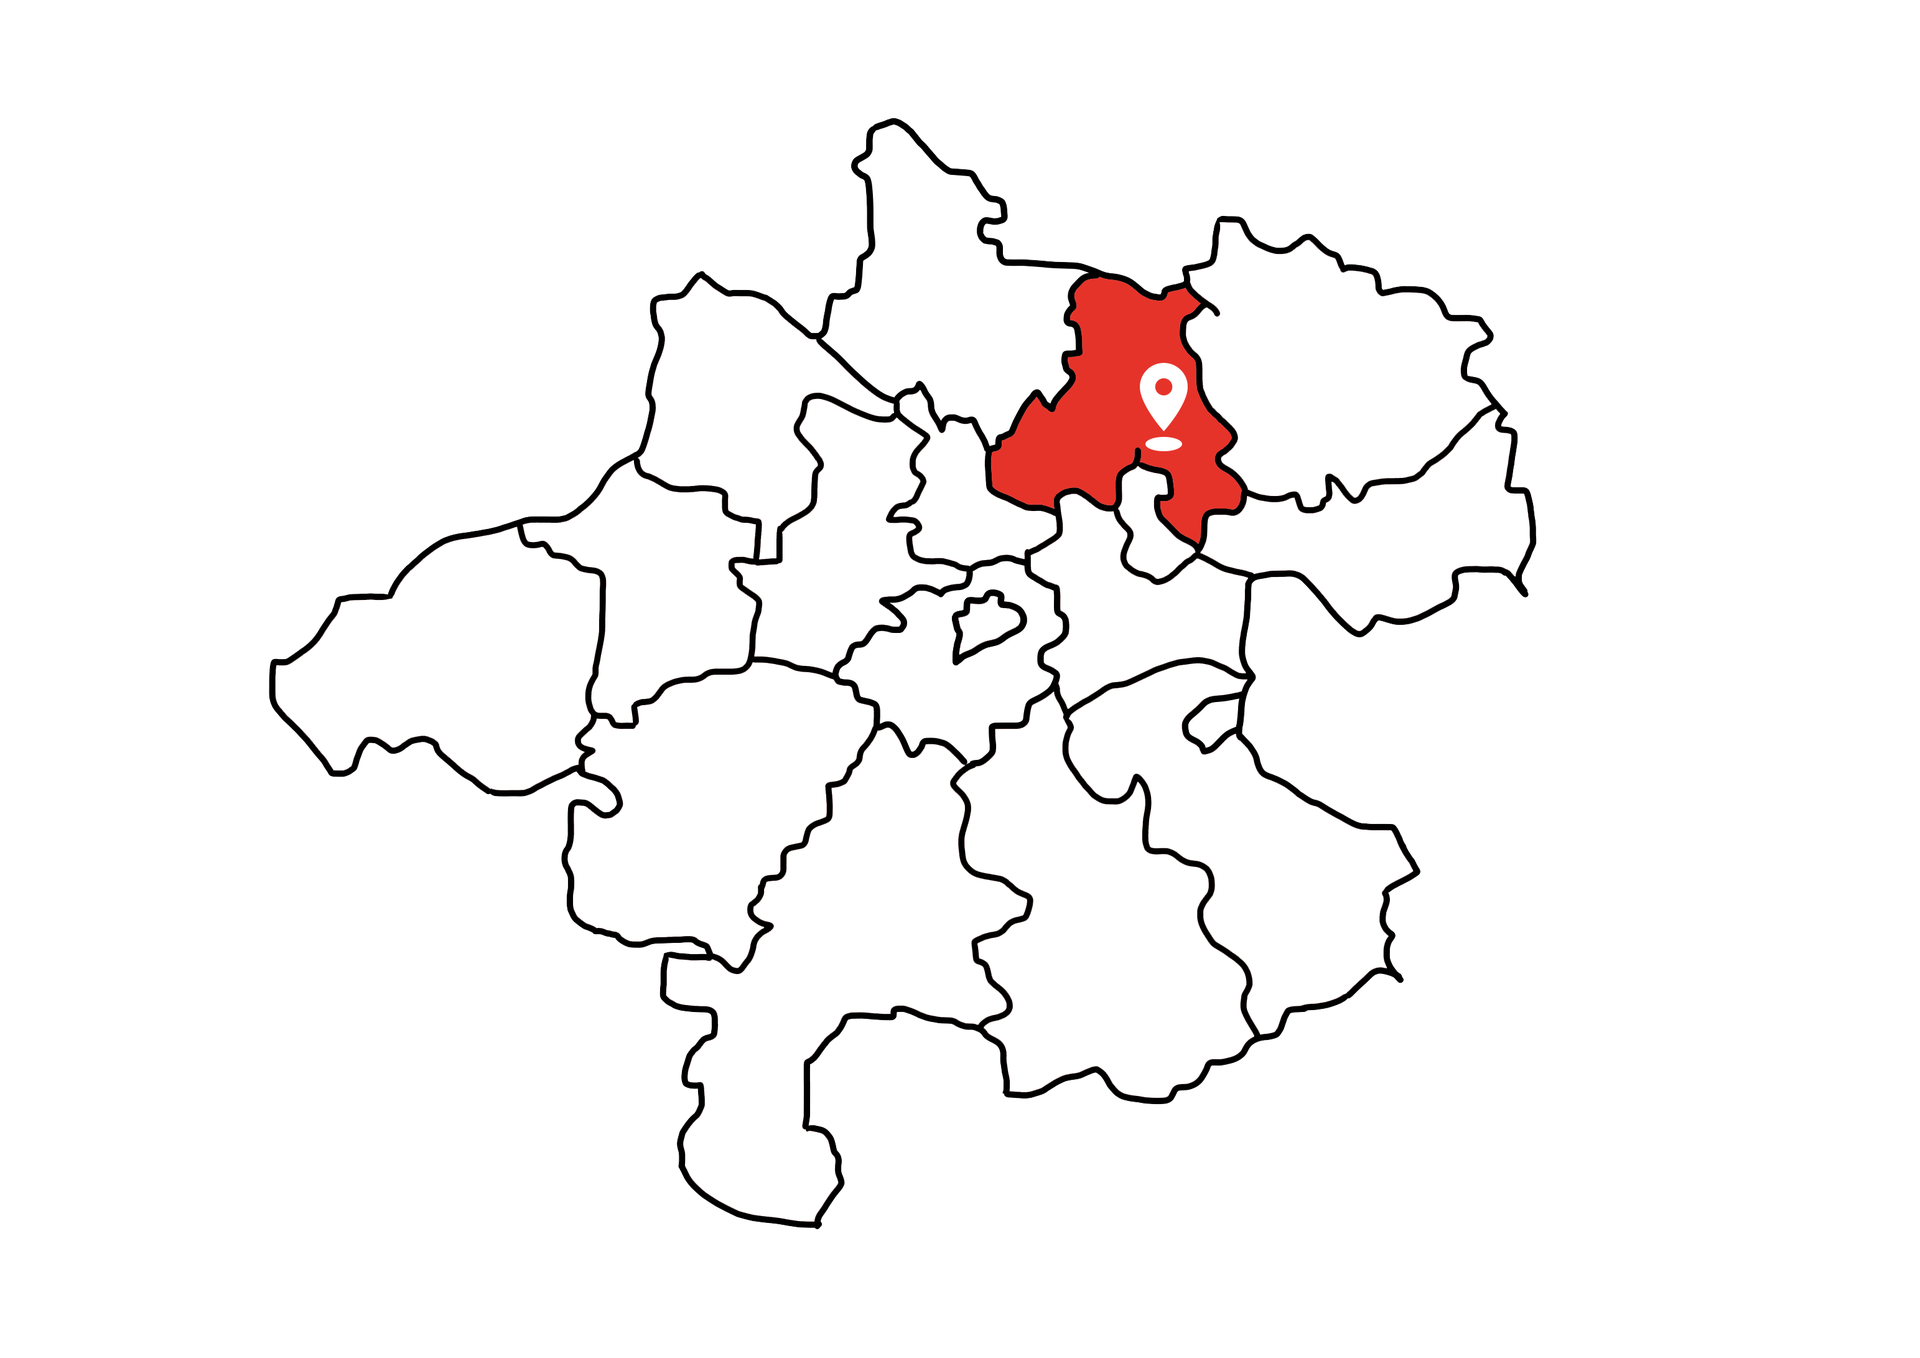 Eine Landkarte die Oberösterreich zeigt. Der Bezirk Urfahr-Umgebung ist rot markiert. Die restlichen Bezirke sind weiß.